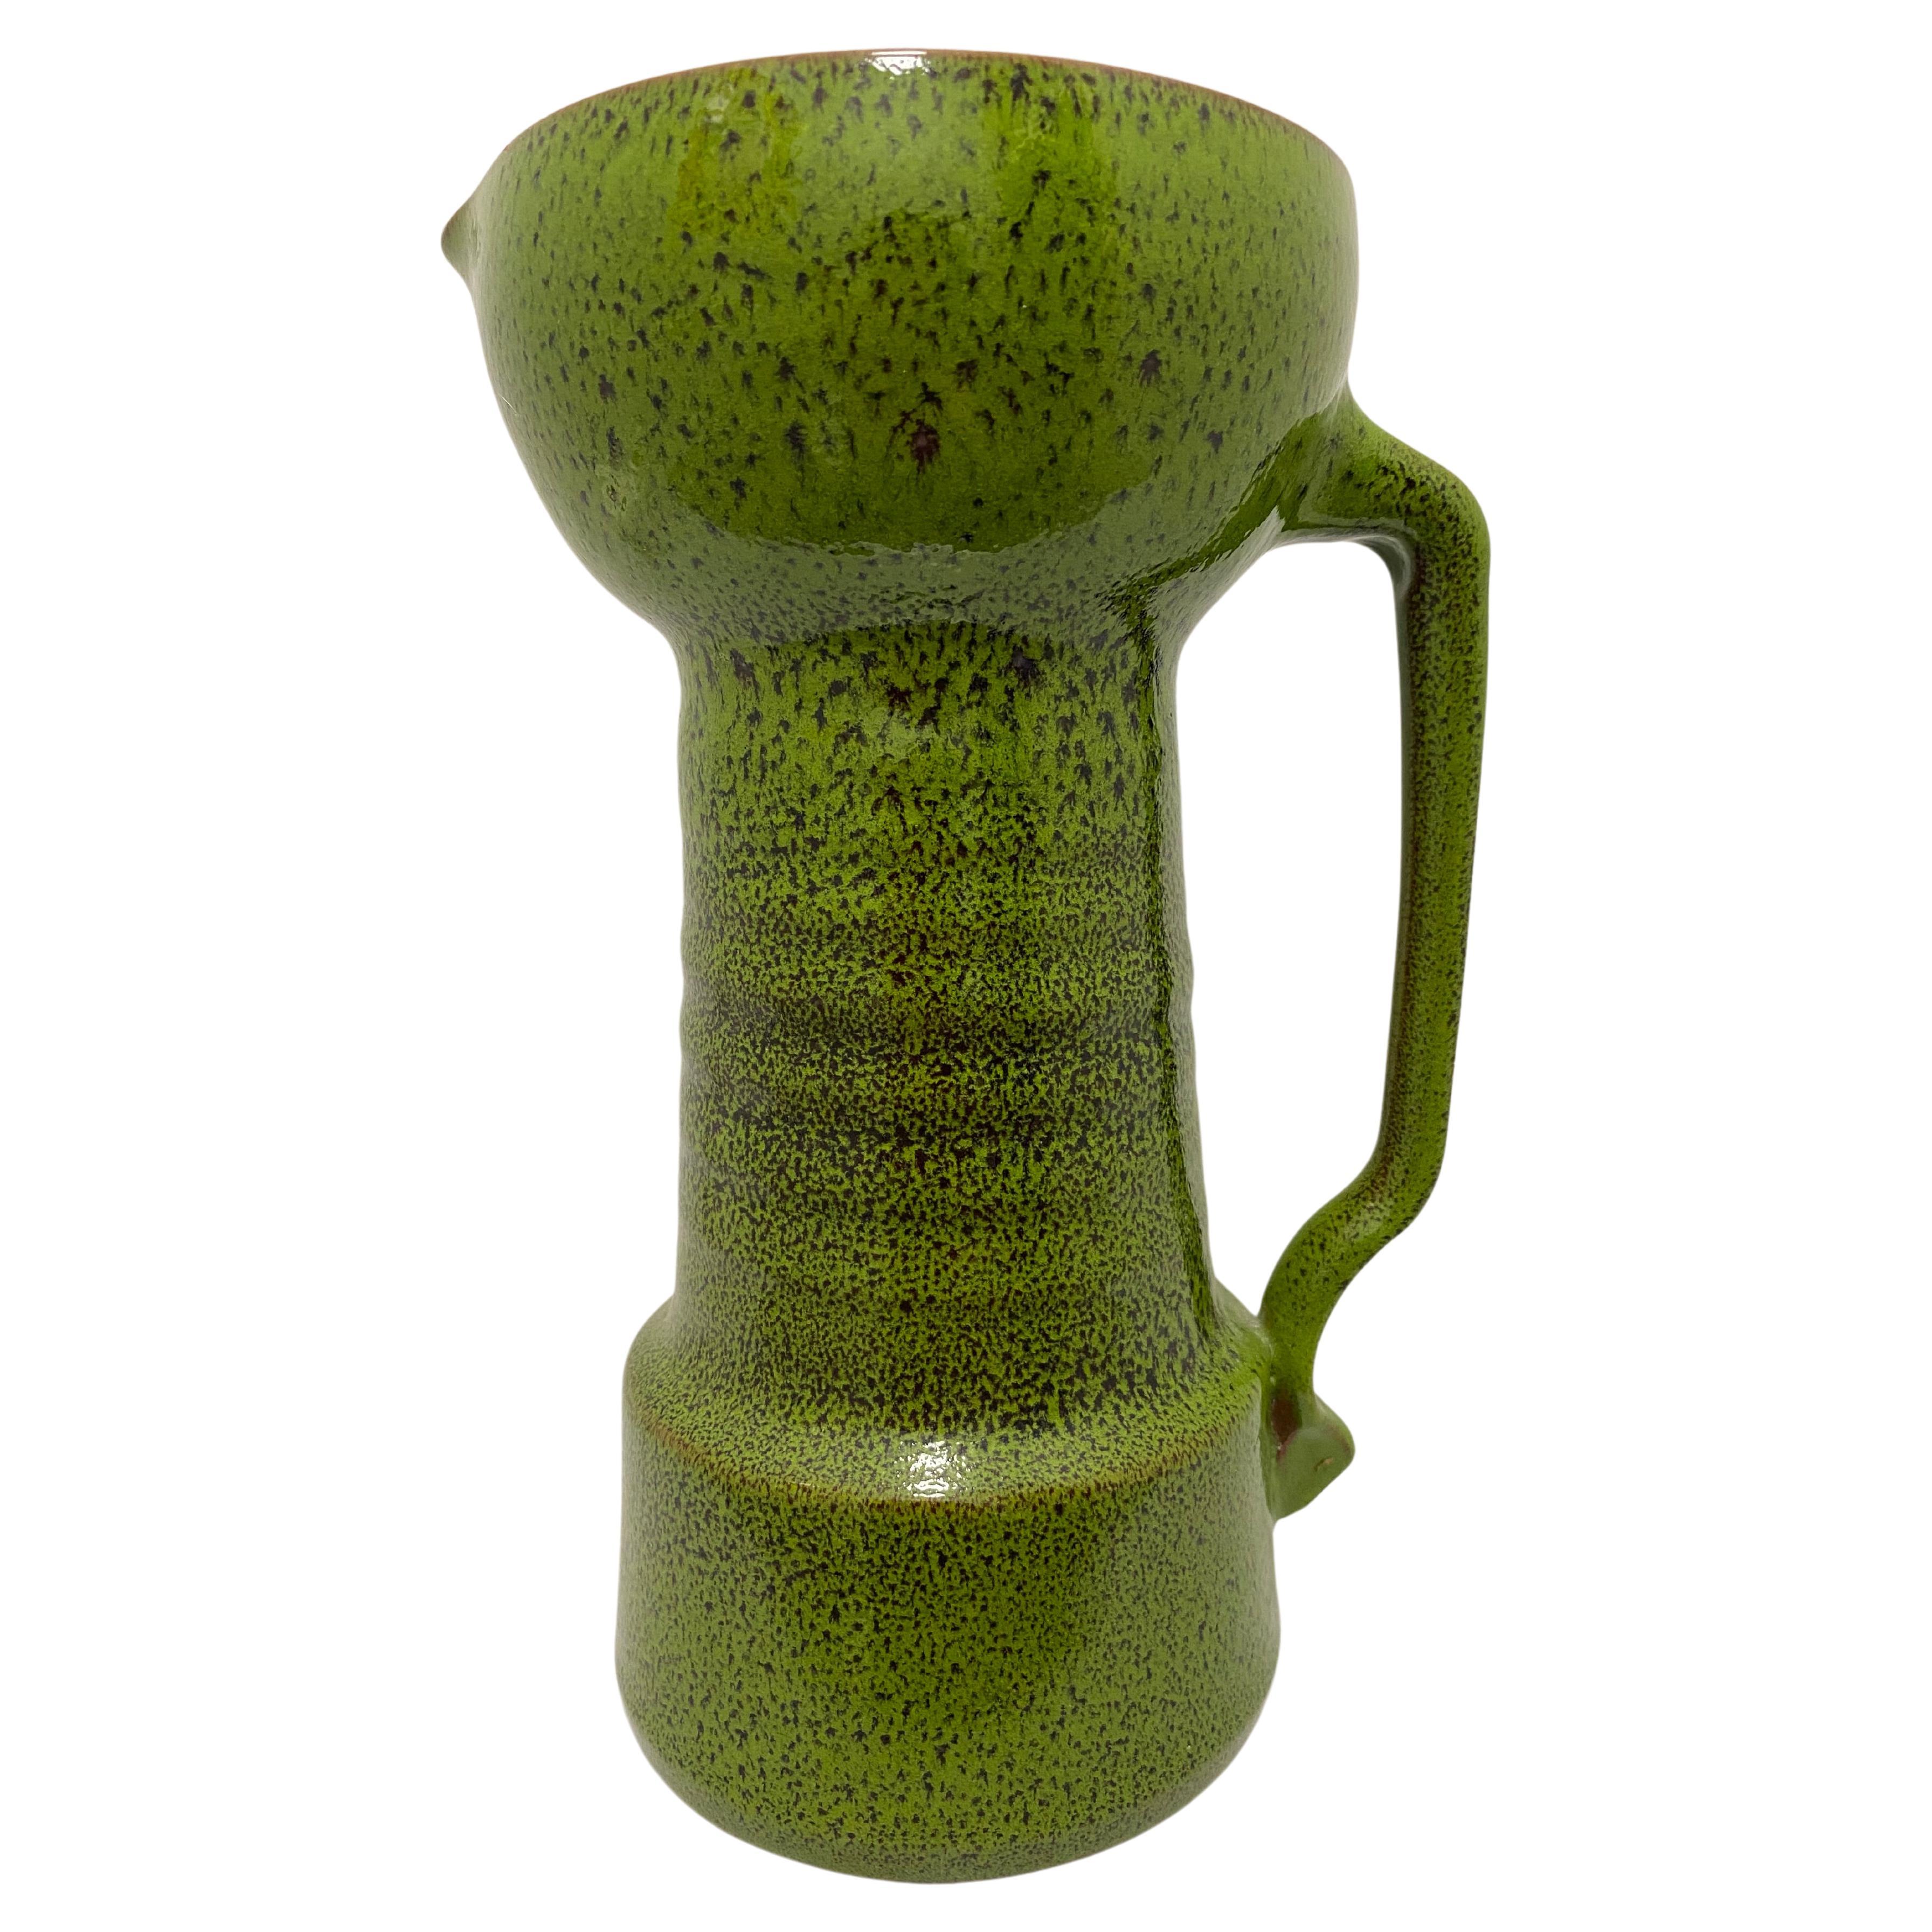 Seventies Green Vase or Jug